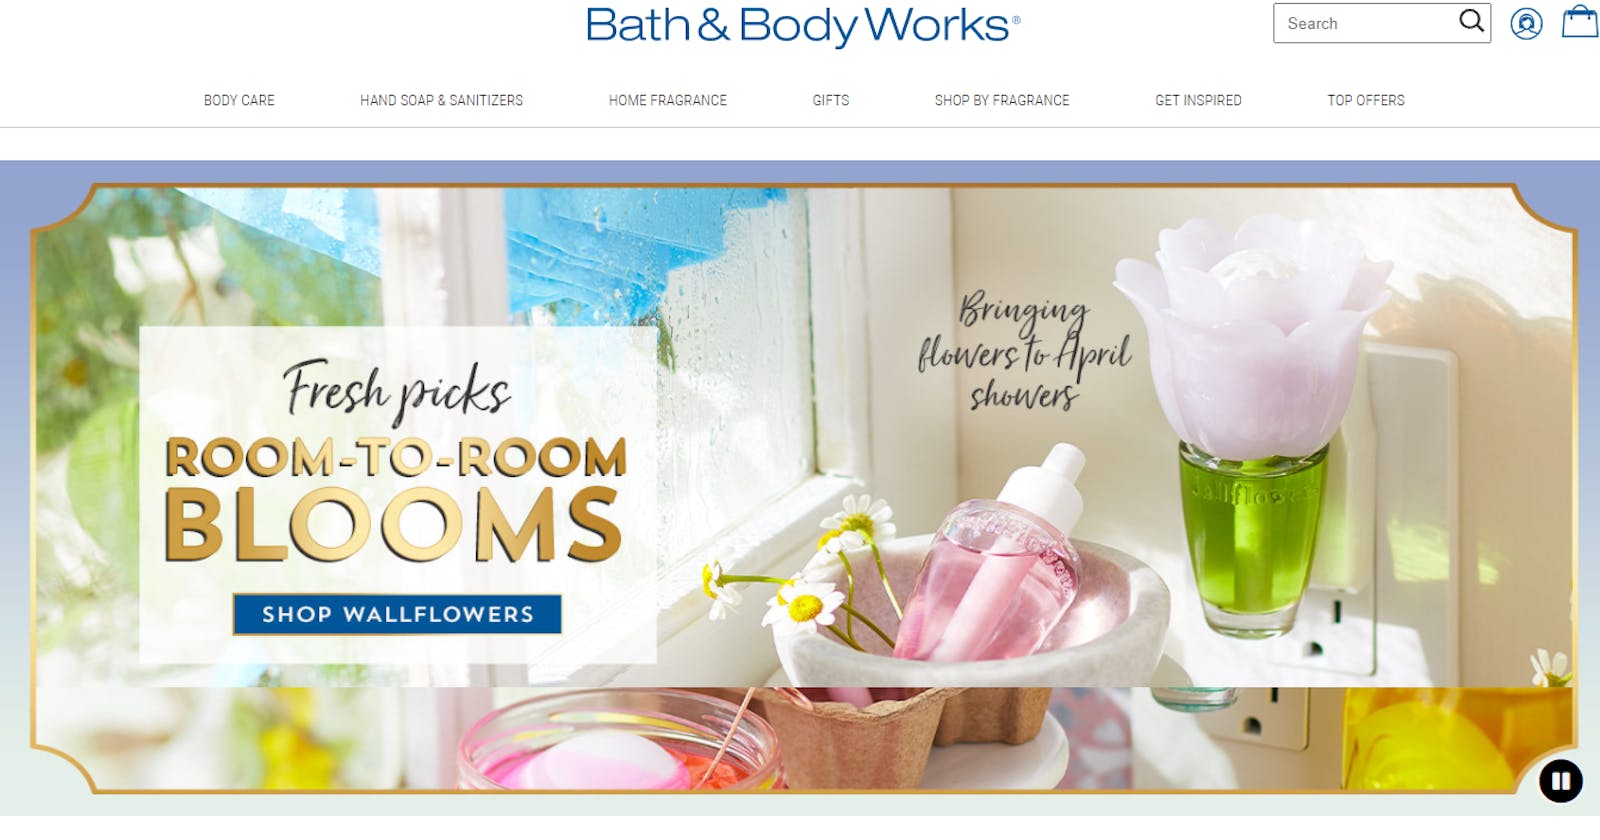 Cloning Bath & Body Works website in 4 days...